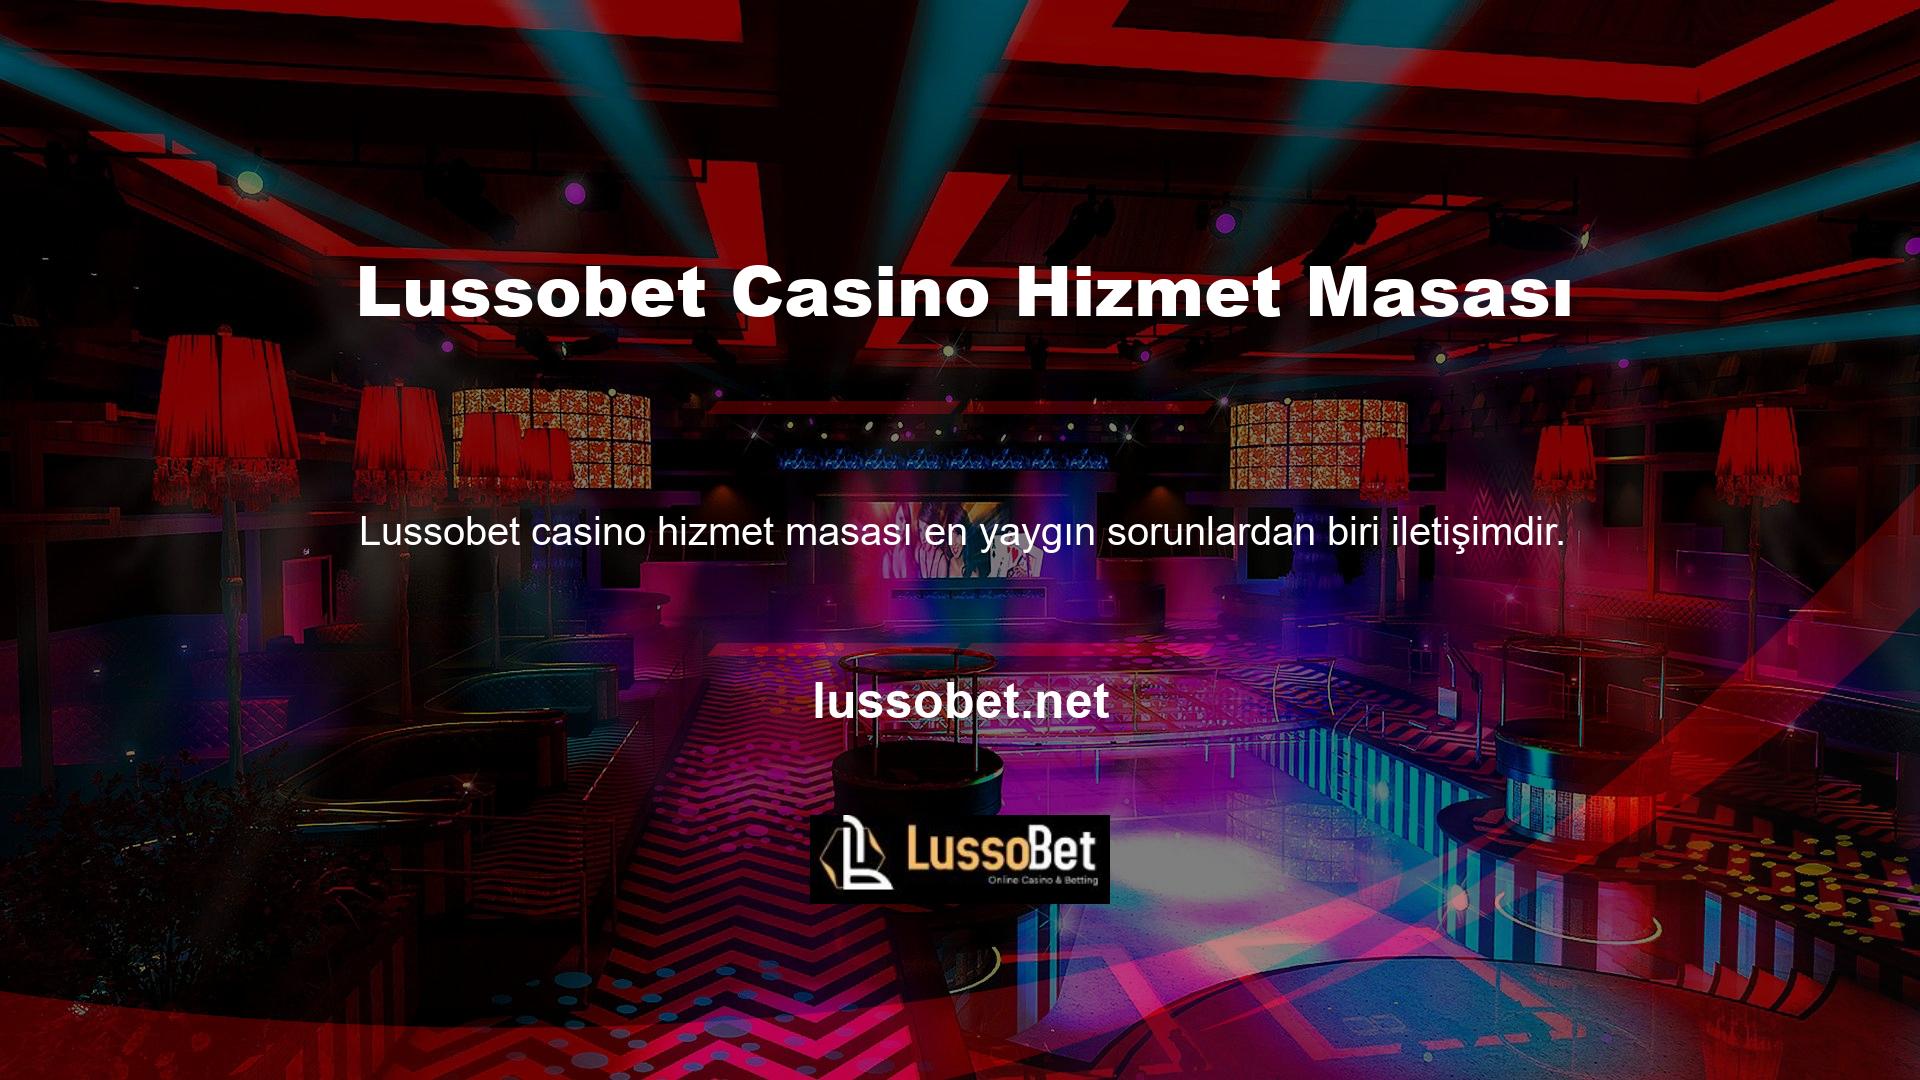 Bu konuda bir diğer canlı casino sitesi olan Lussobet, sosyal medya iletişim bilgilerini oyuncuların paylaşması için ana sayfasında yayınlamaktadır